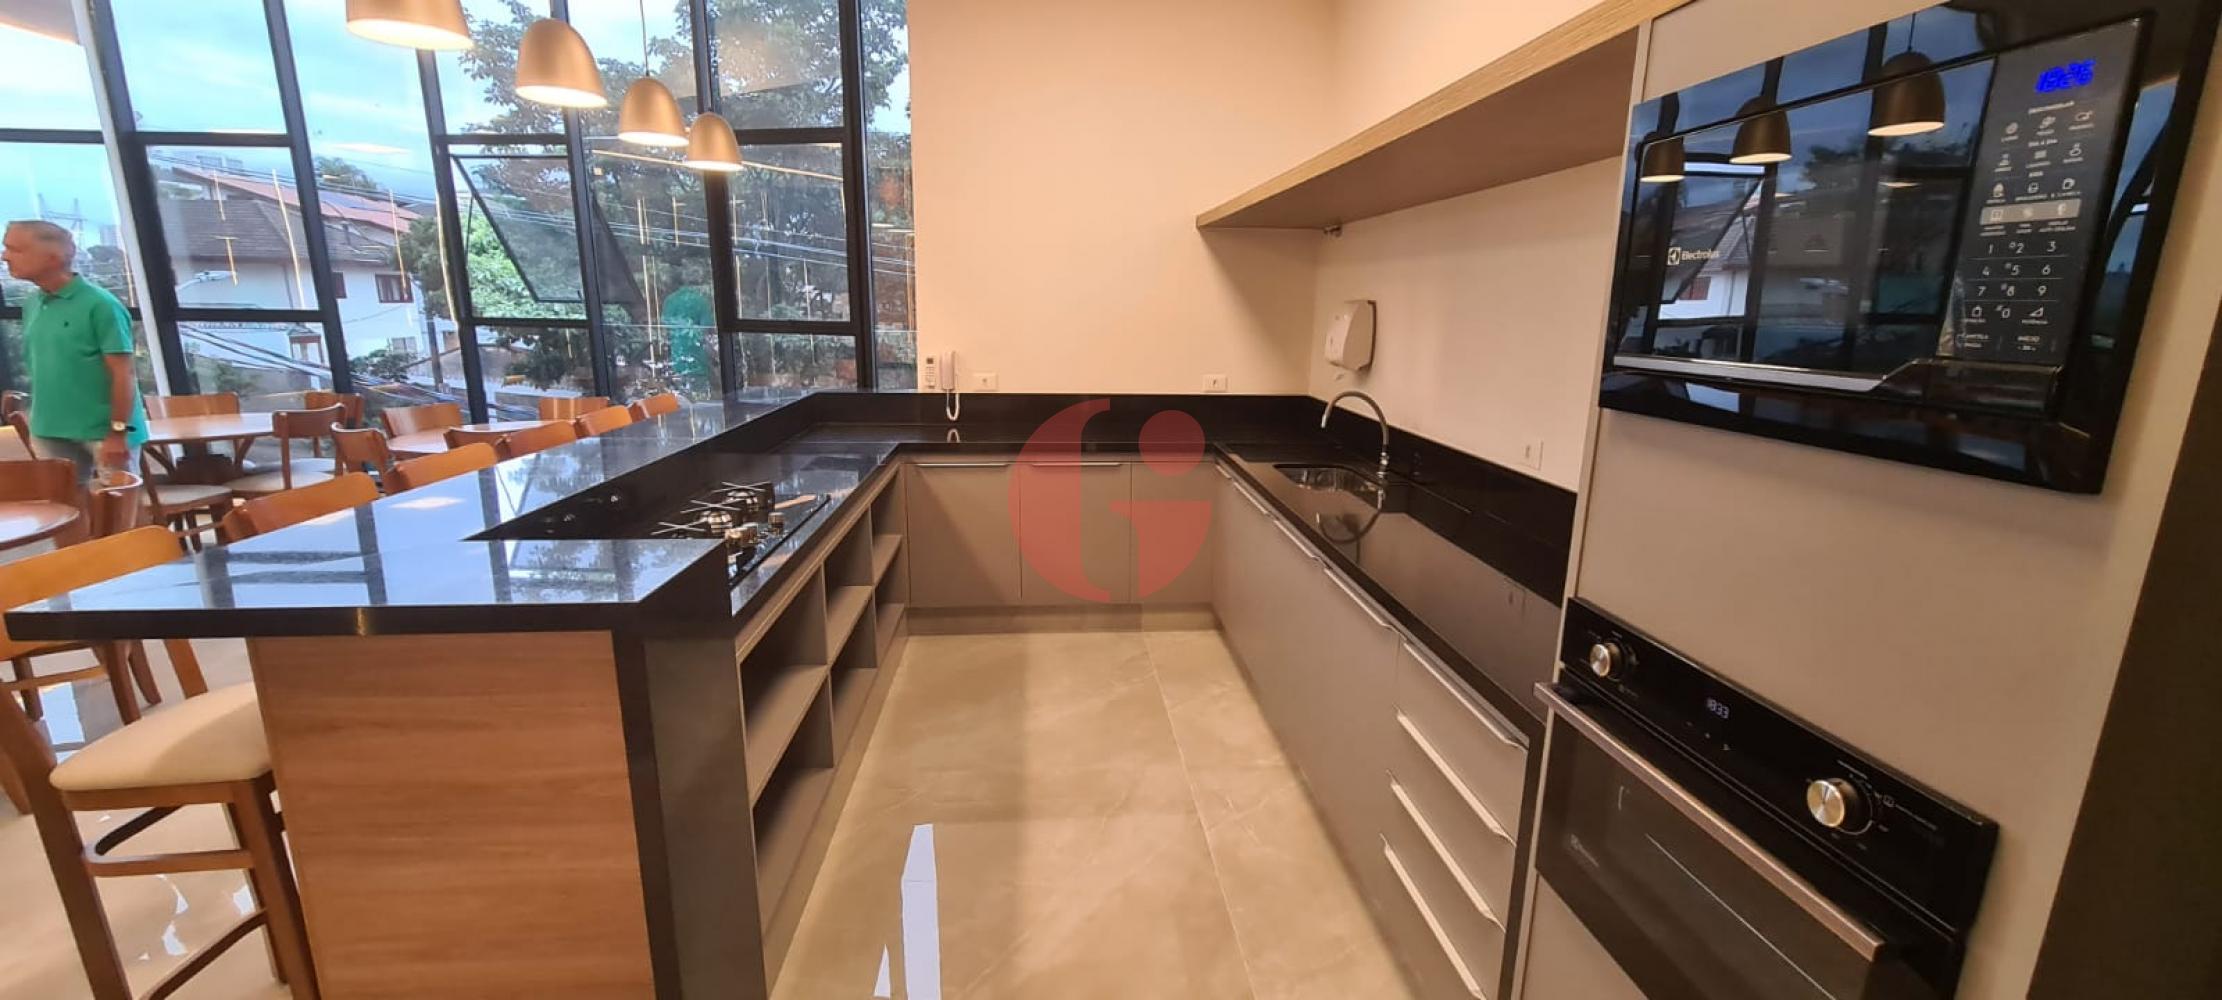 Comprar Apartamento / Duplex em São José dos Campos R$ 690.000,00 - Foto 11